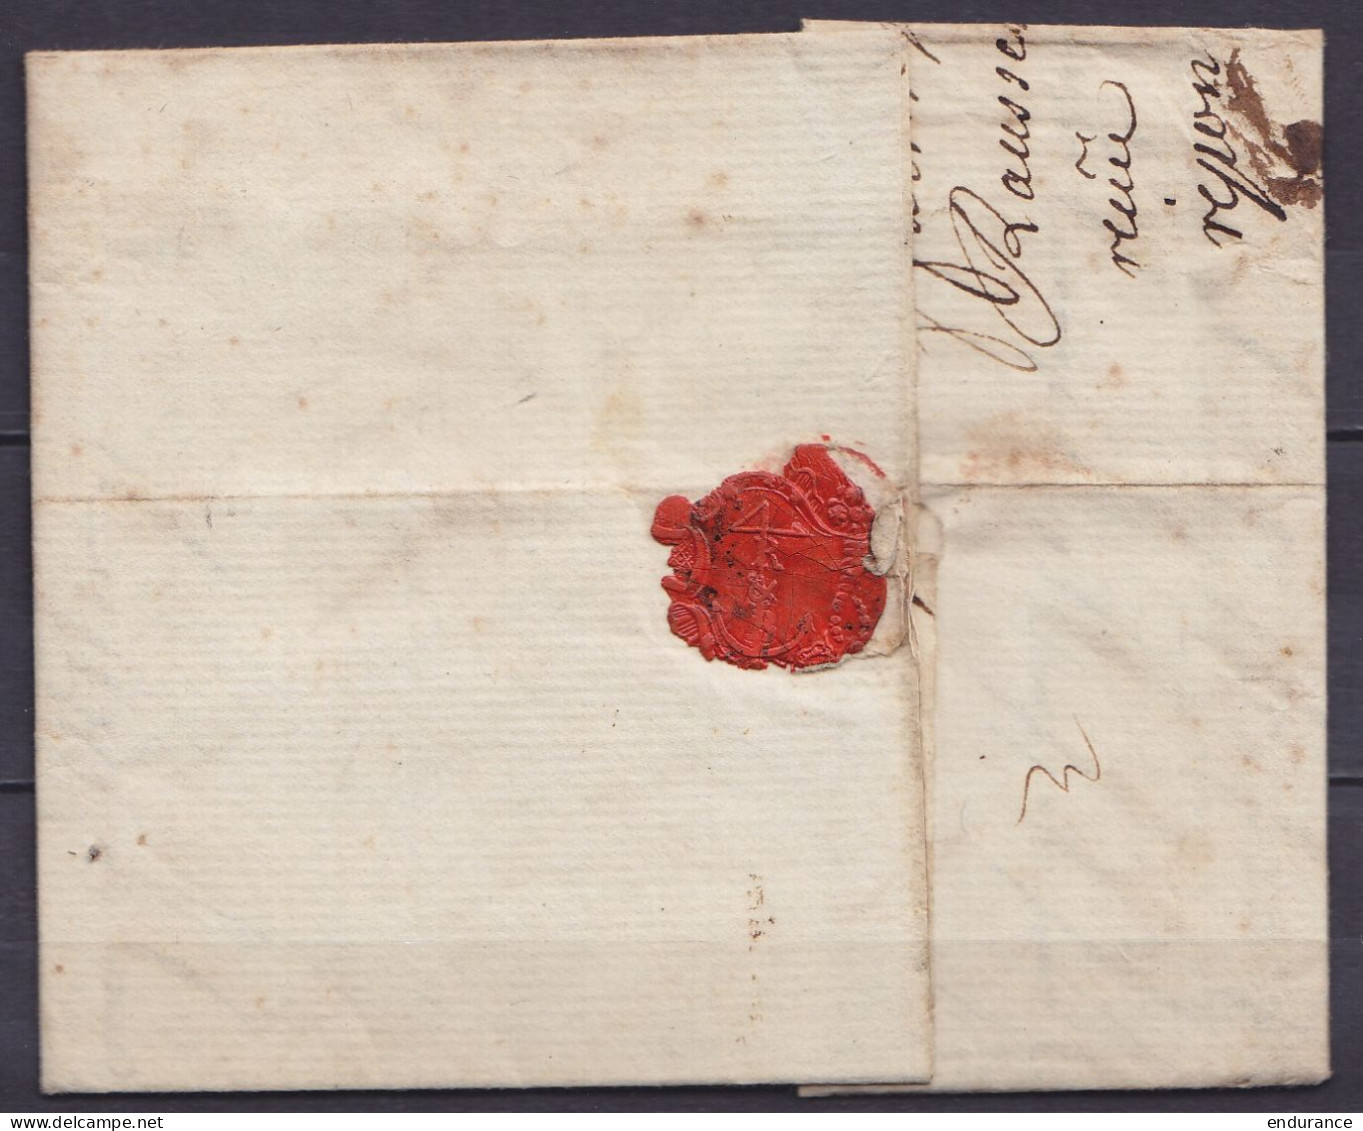 L. Datée 8 Septembre 1783 De FRANCFORT Pour BORDEAUX - Marque De Passage "MASEYCK" - Port Divers - 1714-1794 (Oesterreichische Niederlande)